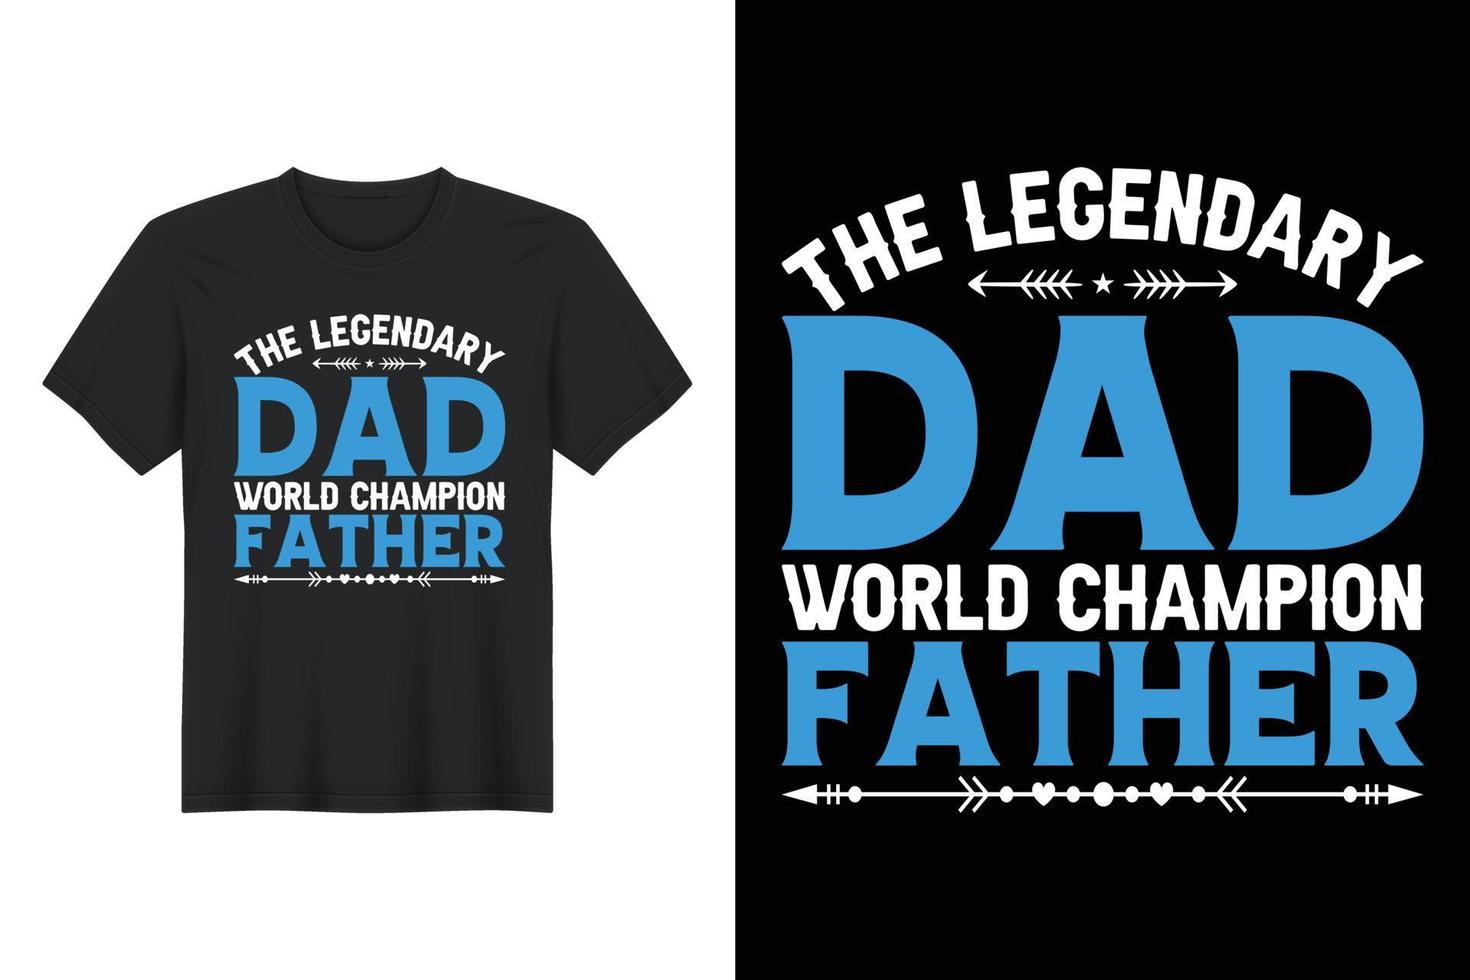 de legendarische vader wereldkampioen vader, t-shirtontwerp, vaderdag t-shirtontwerp vector